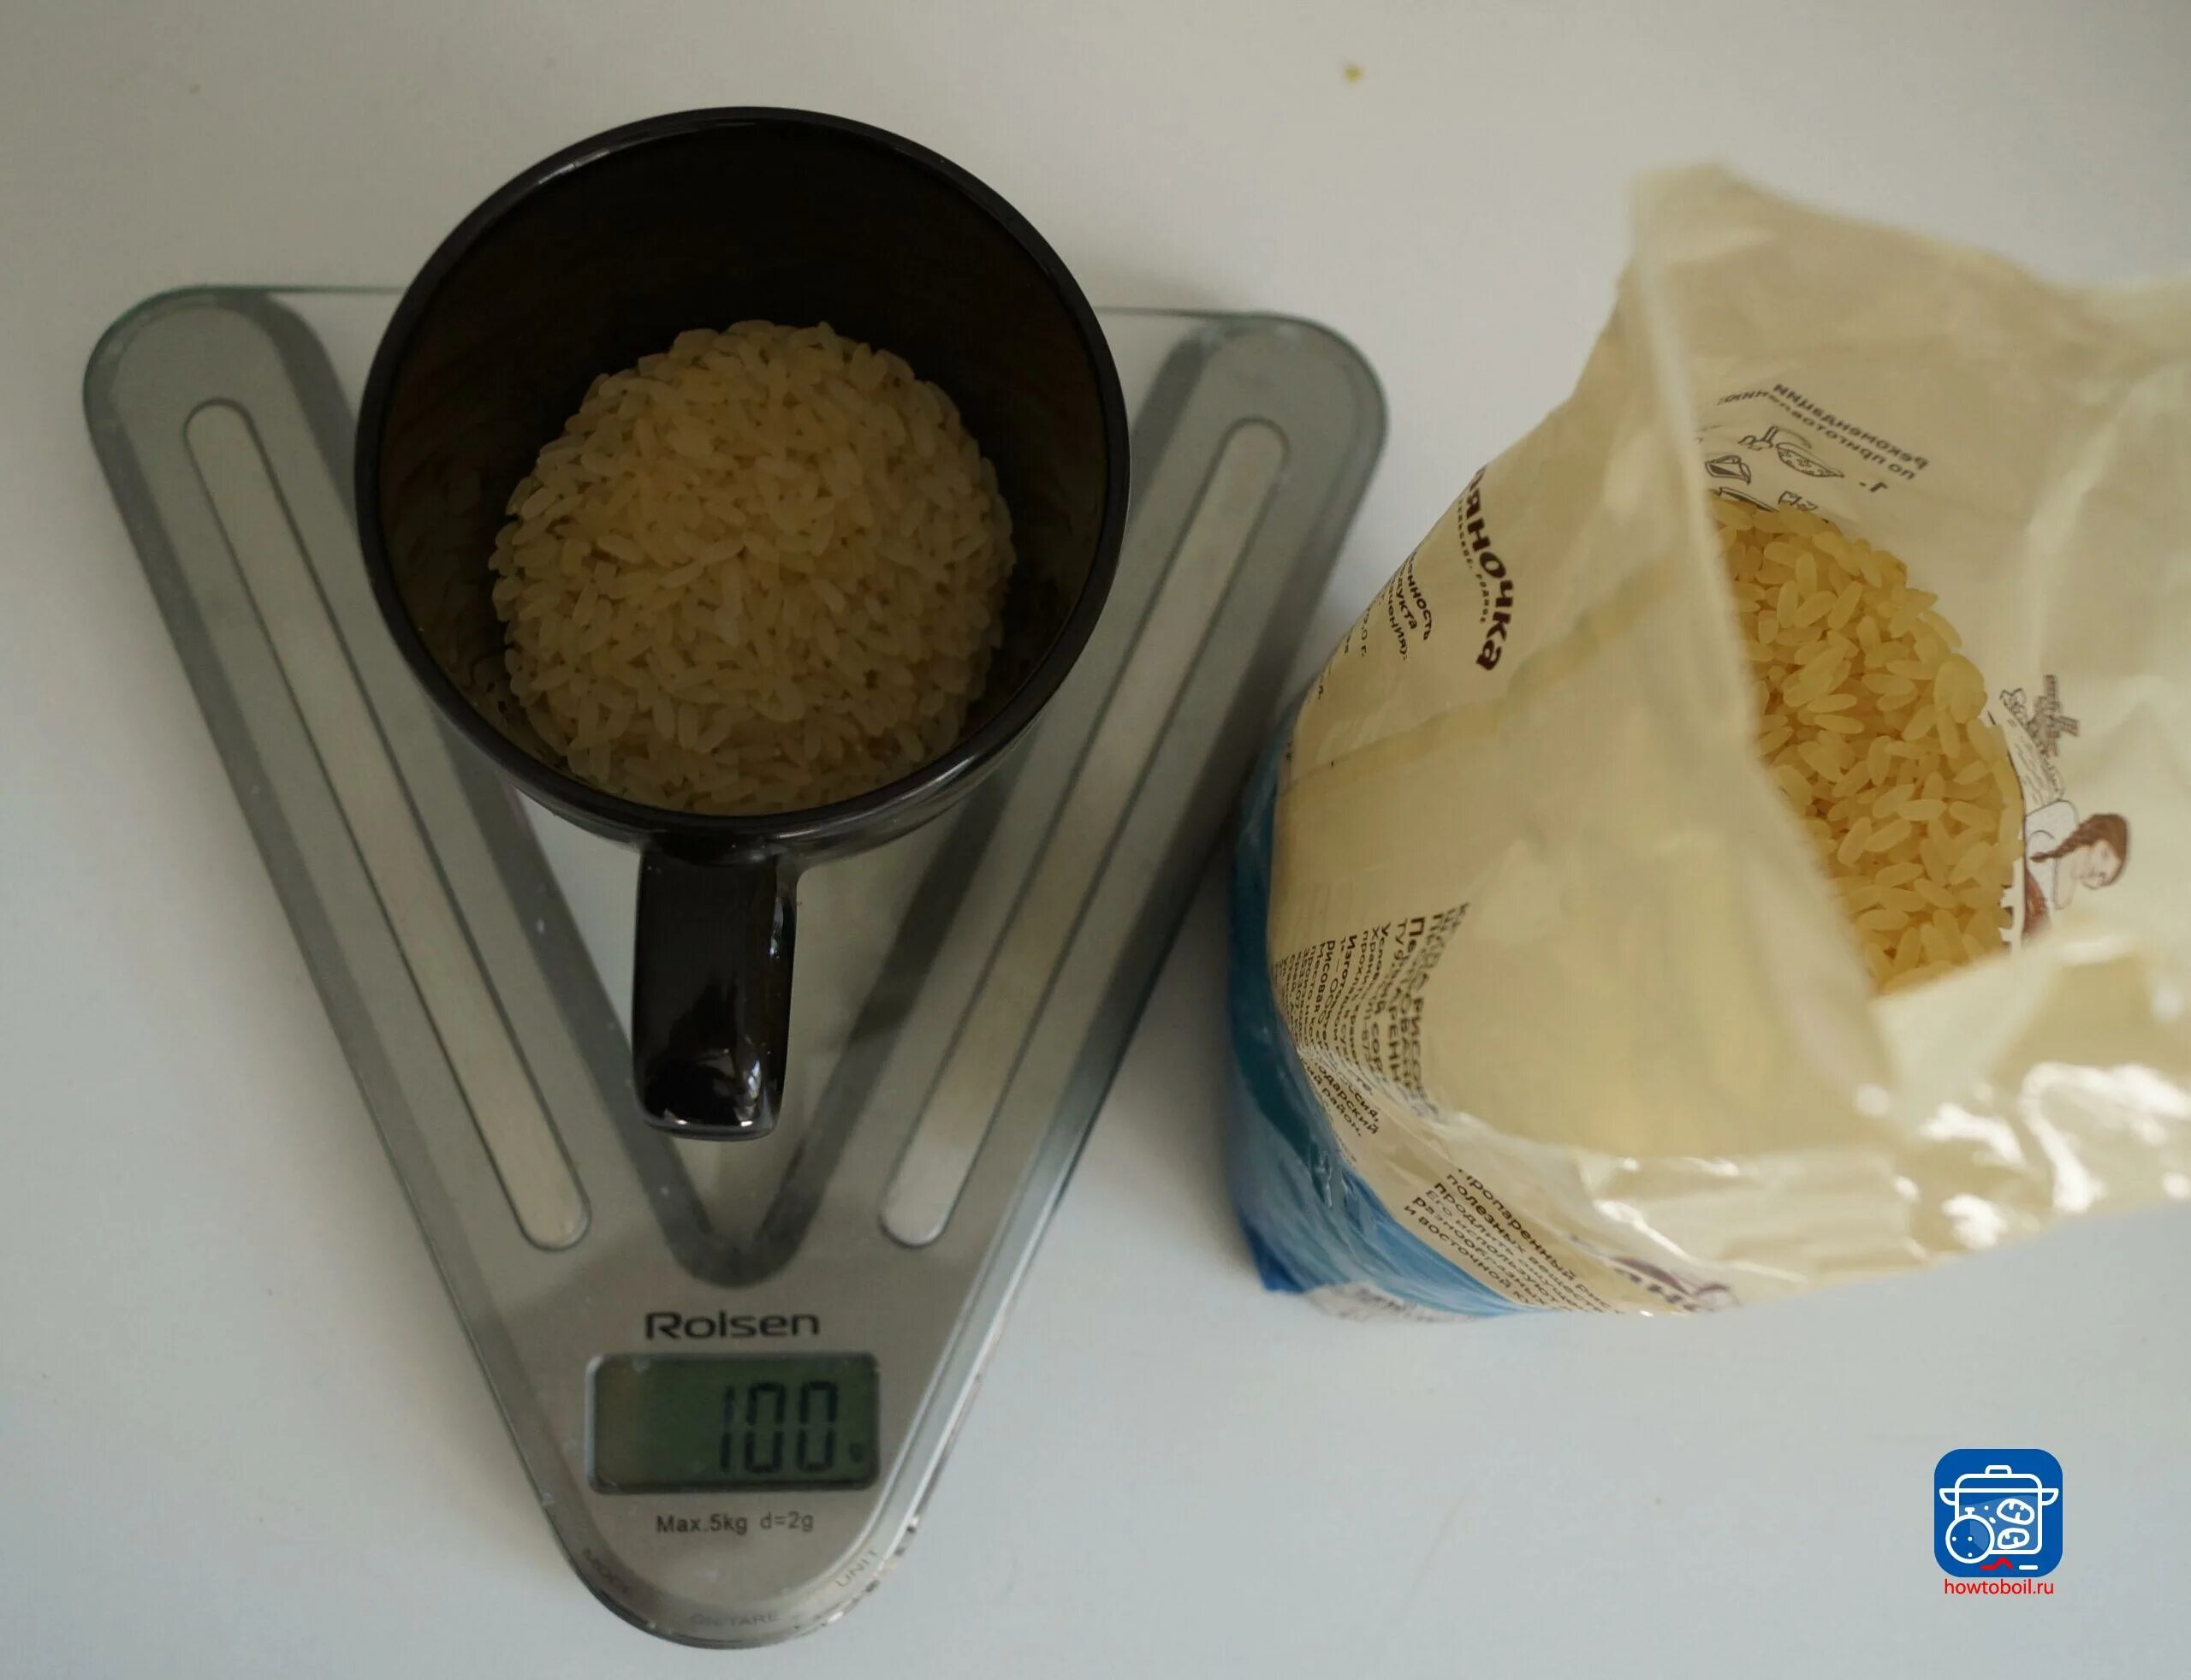 200 грамм риса это сколько. Рис в граммах. СТО грамм риса. 100 Грамм приготовленного риса. СТО грамм вареного риса.